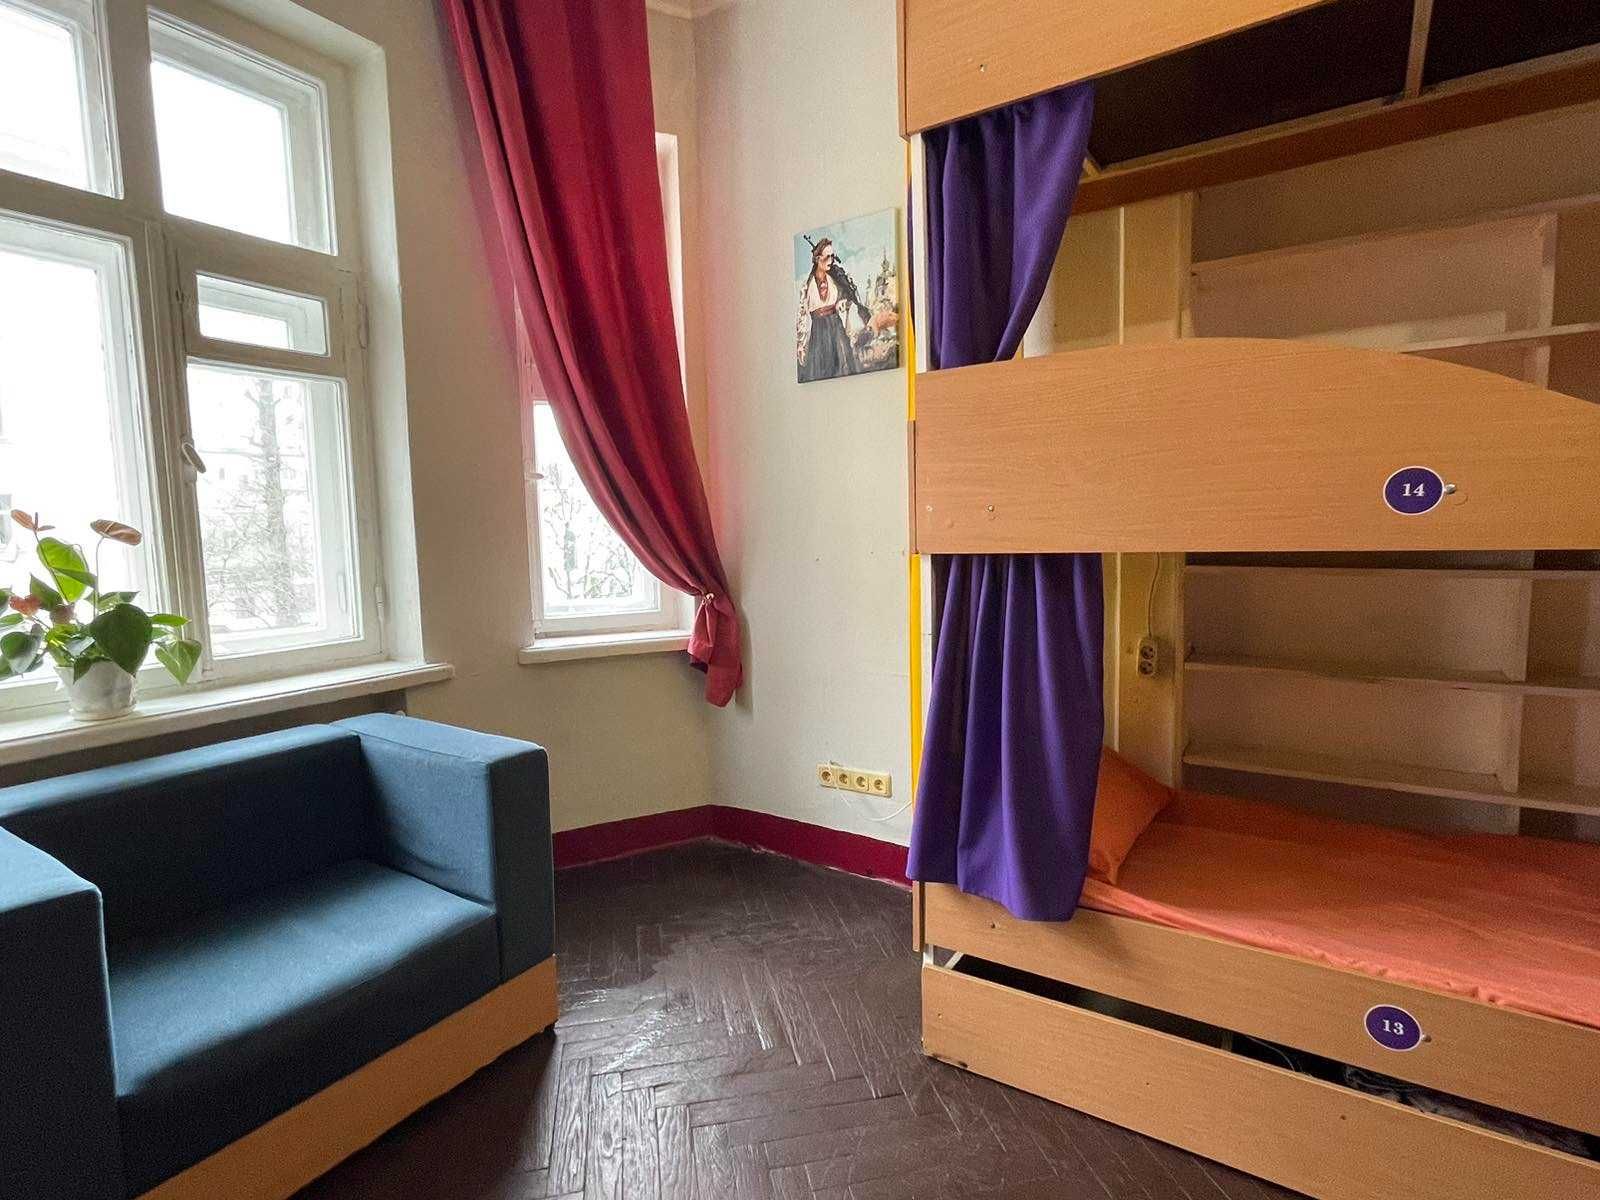 Дешевый хостел в центре Киева. 400 грн. неделя проживания. Общежитие